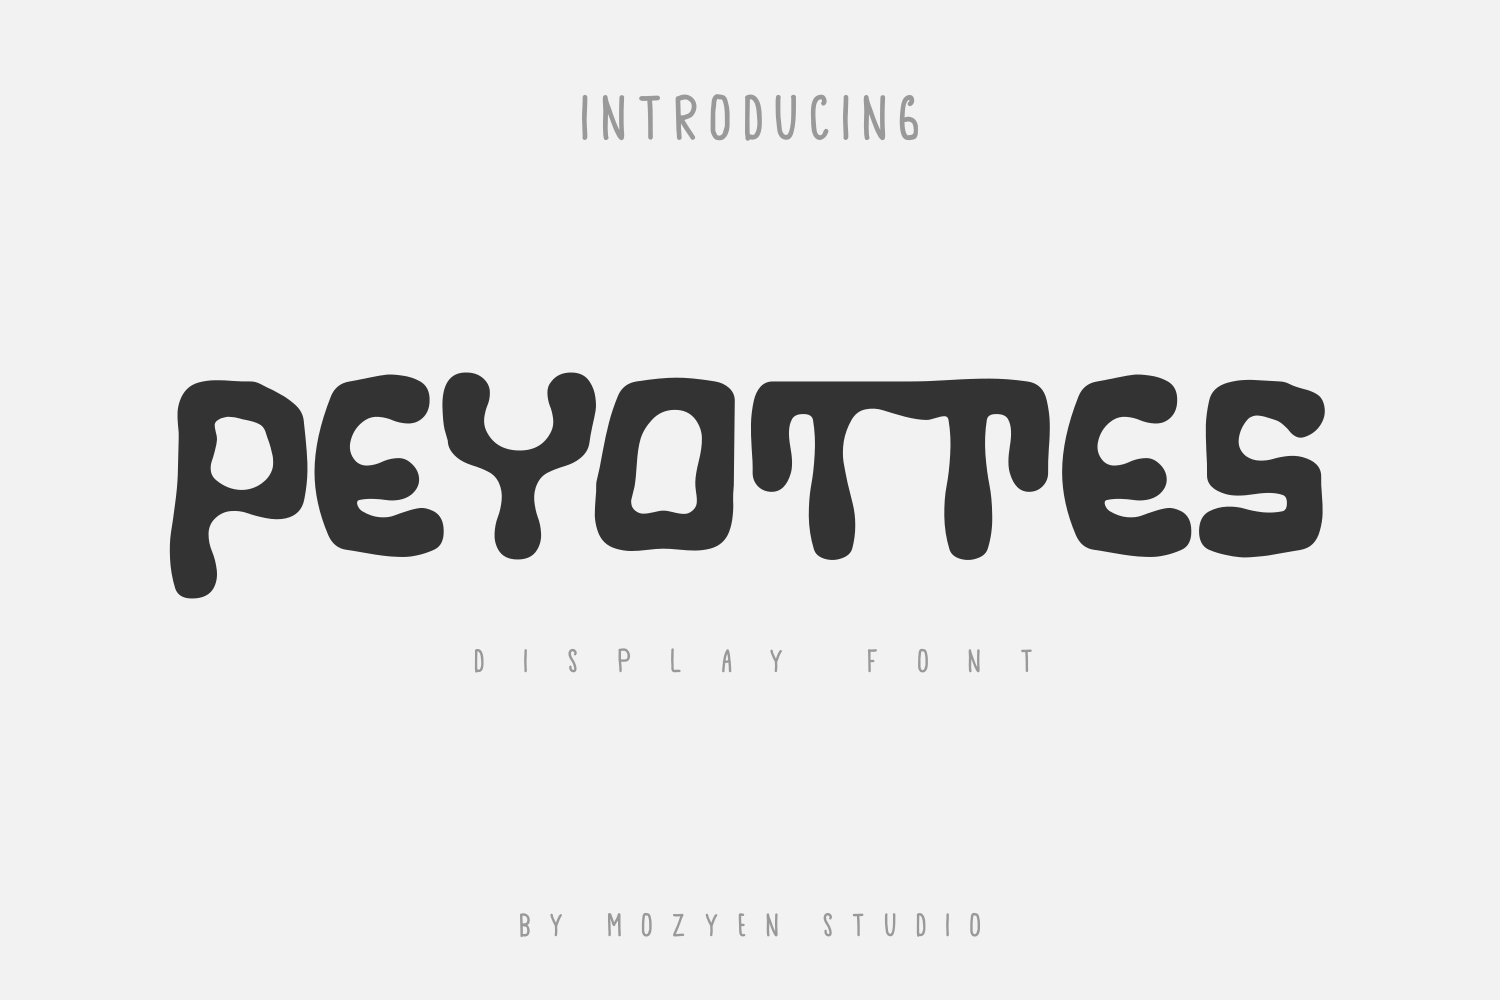 Peyottes